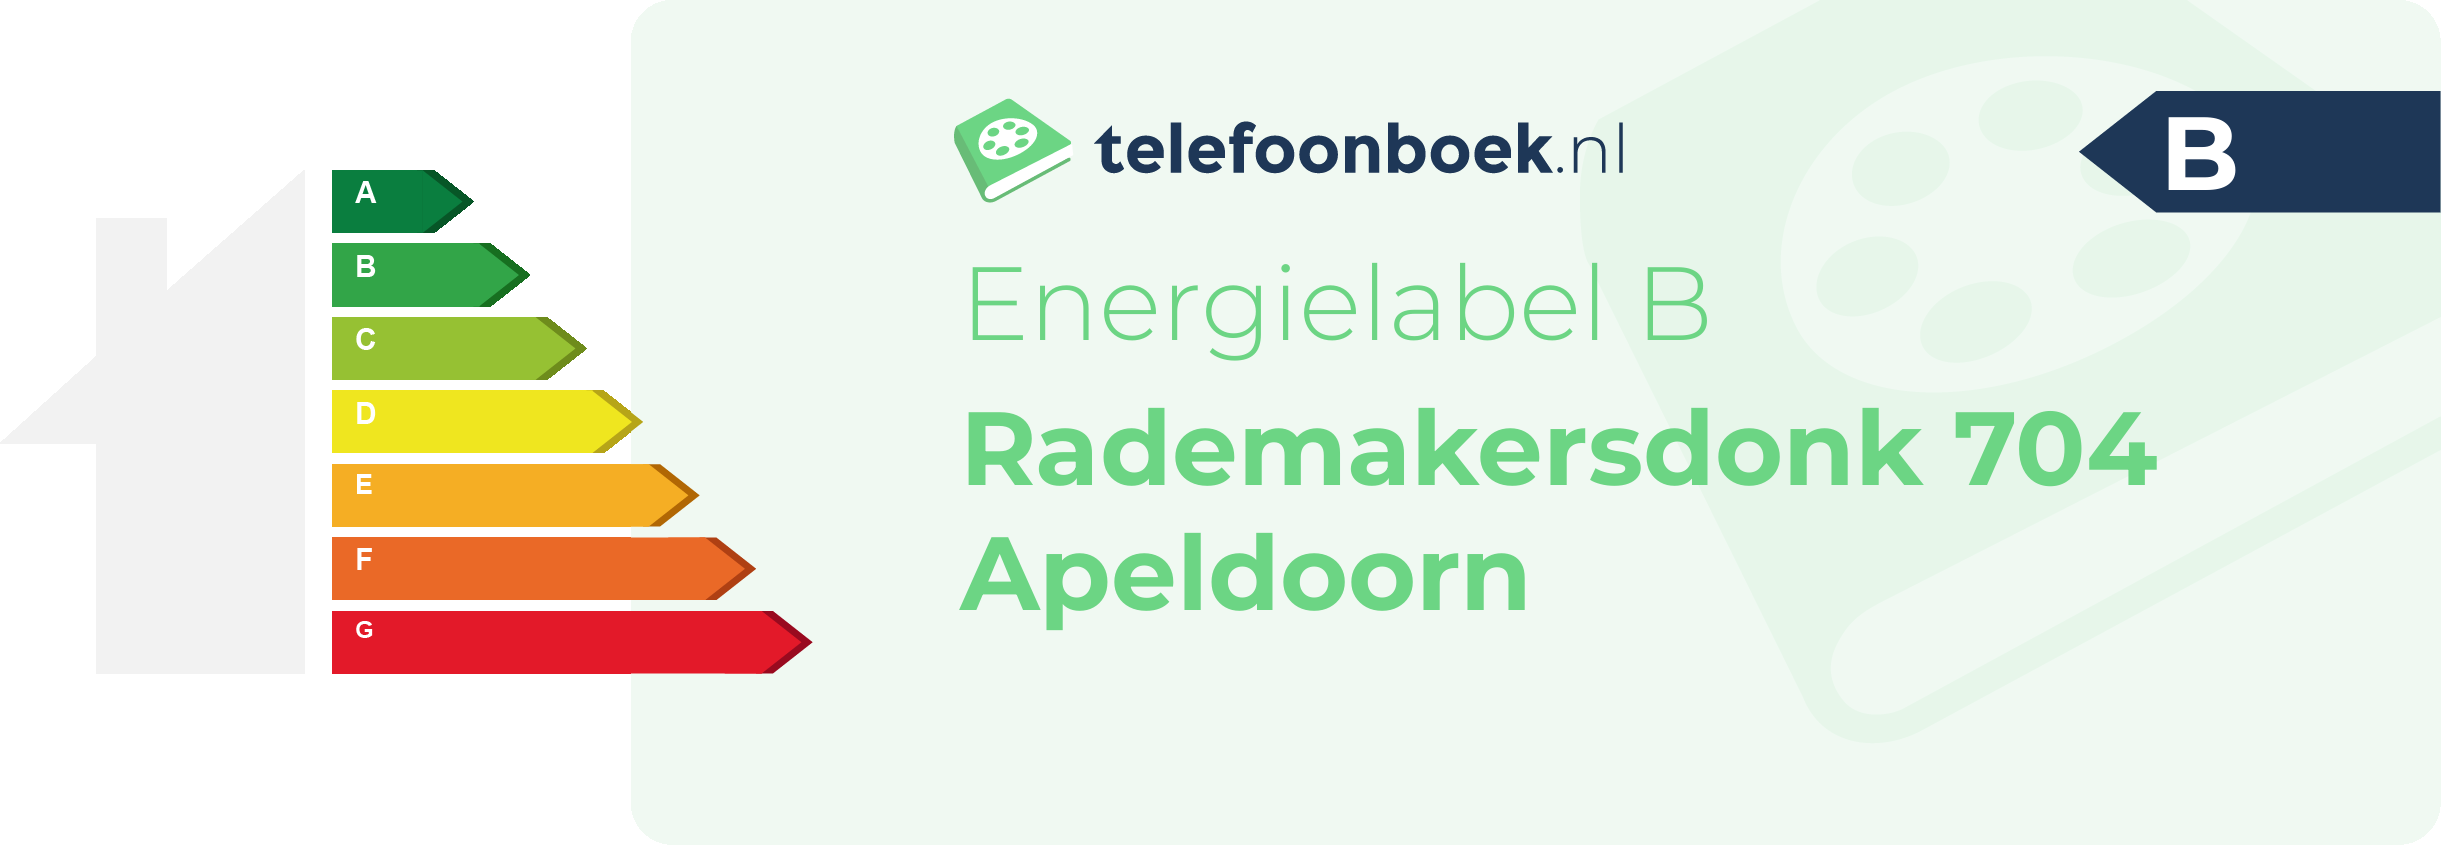 Energielabel Rademakersdonk 704 Apeldoorn